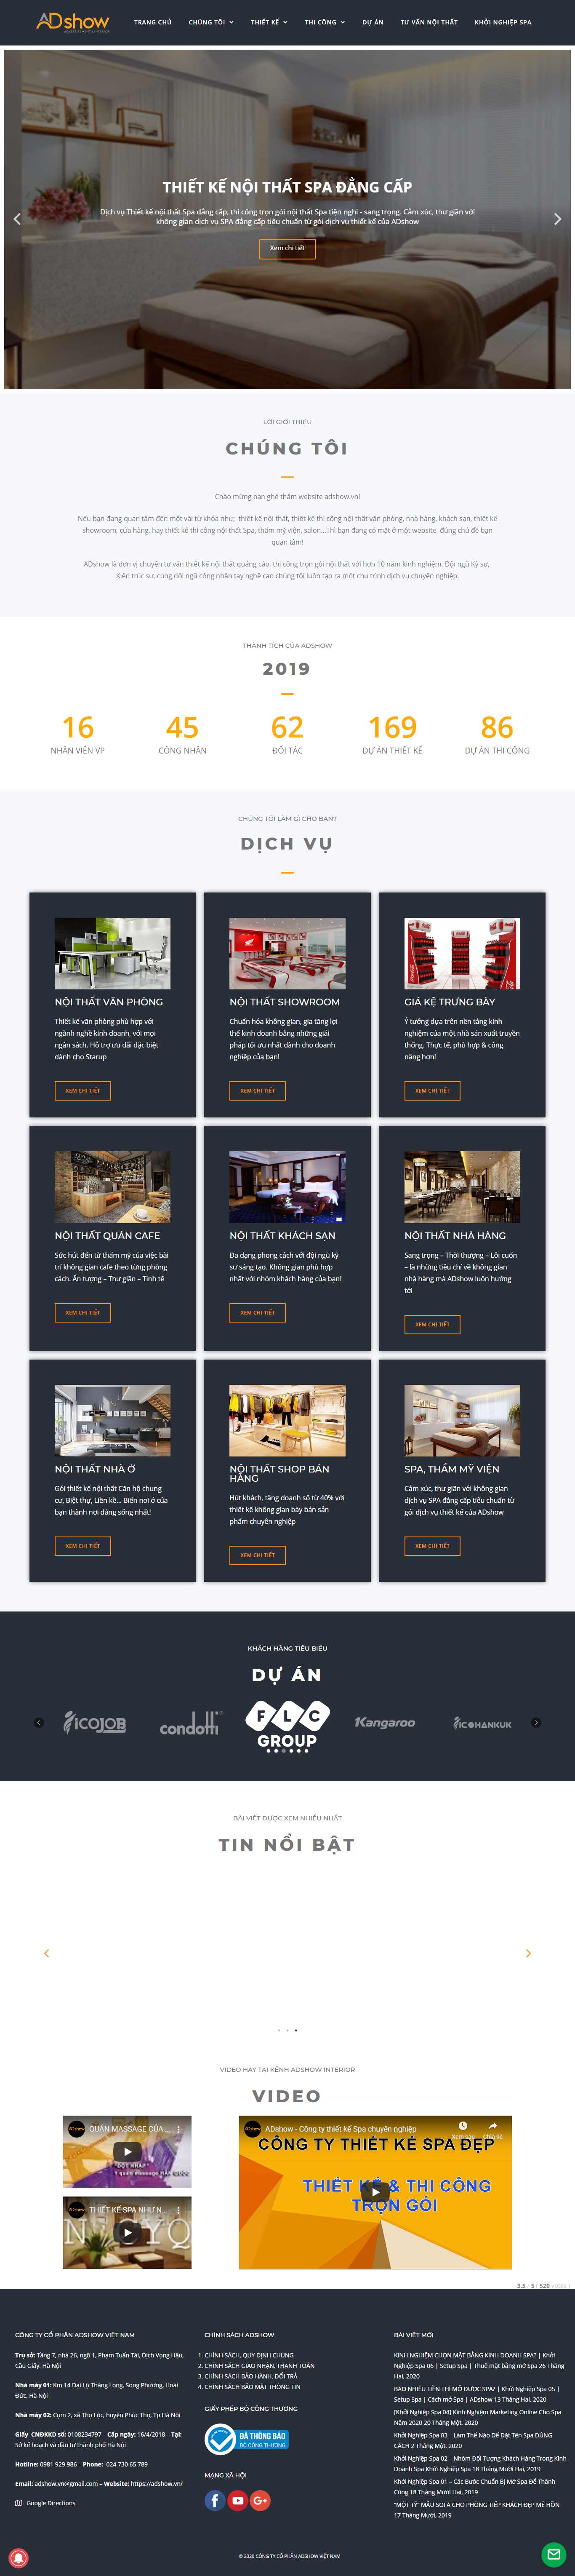 Thiết kế Website trang trí nội thất - adshow.vn